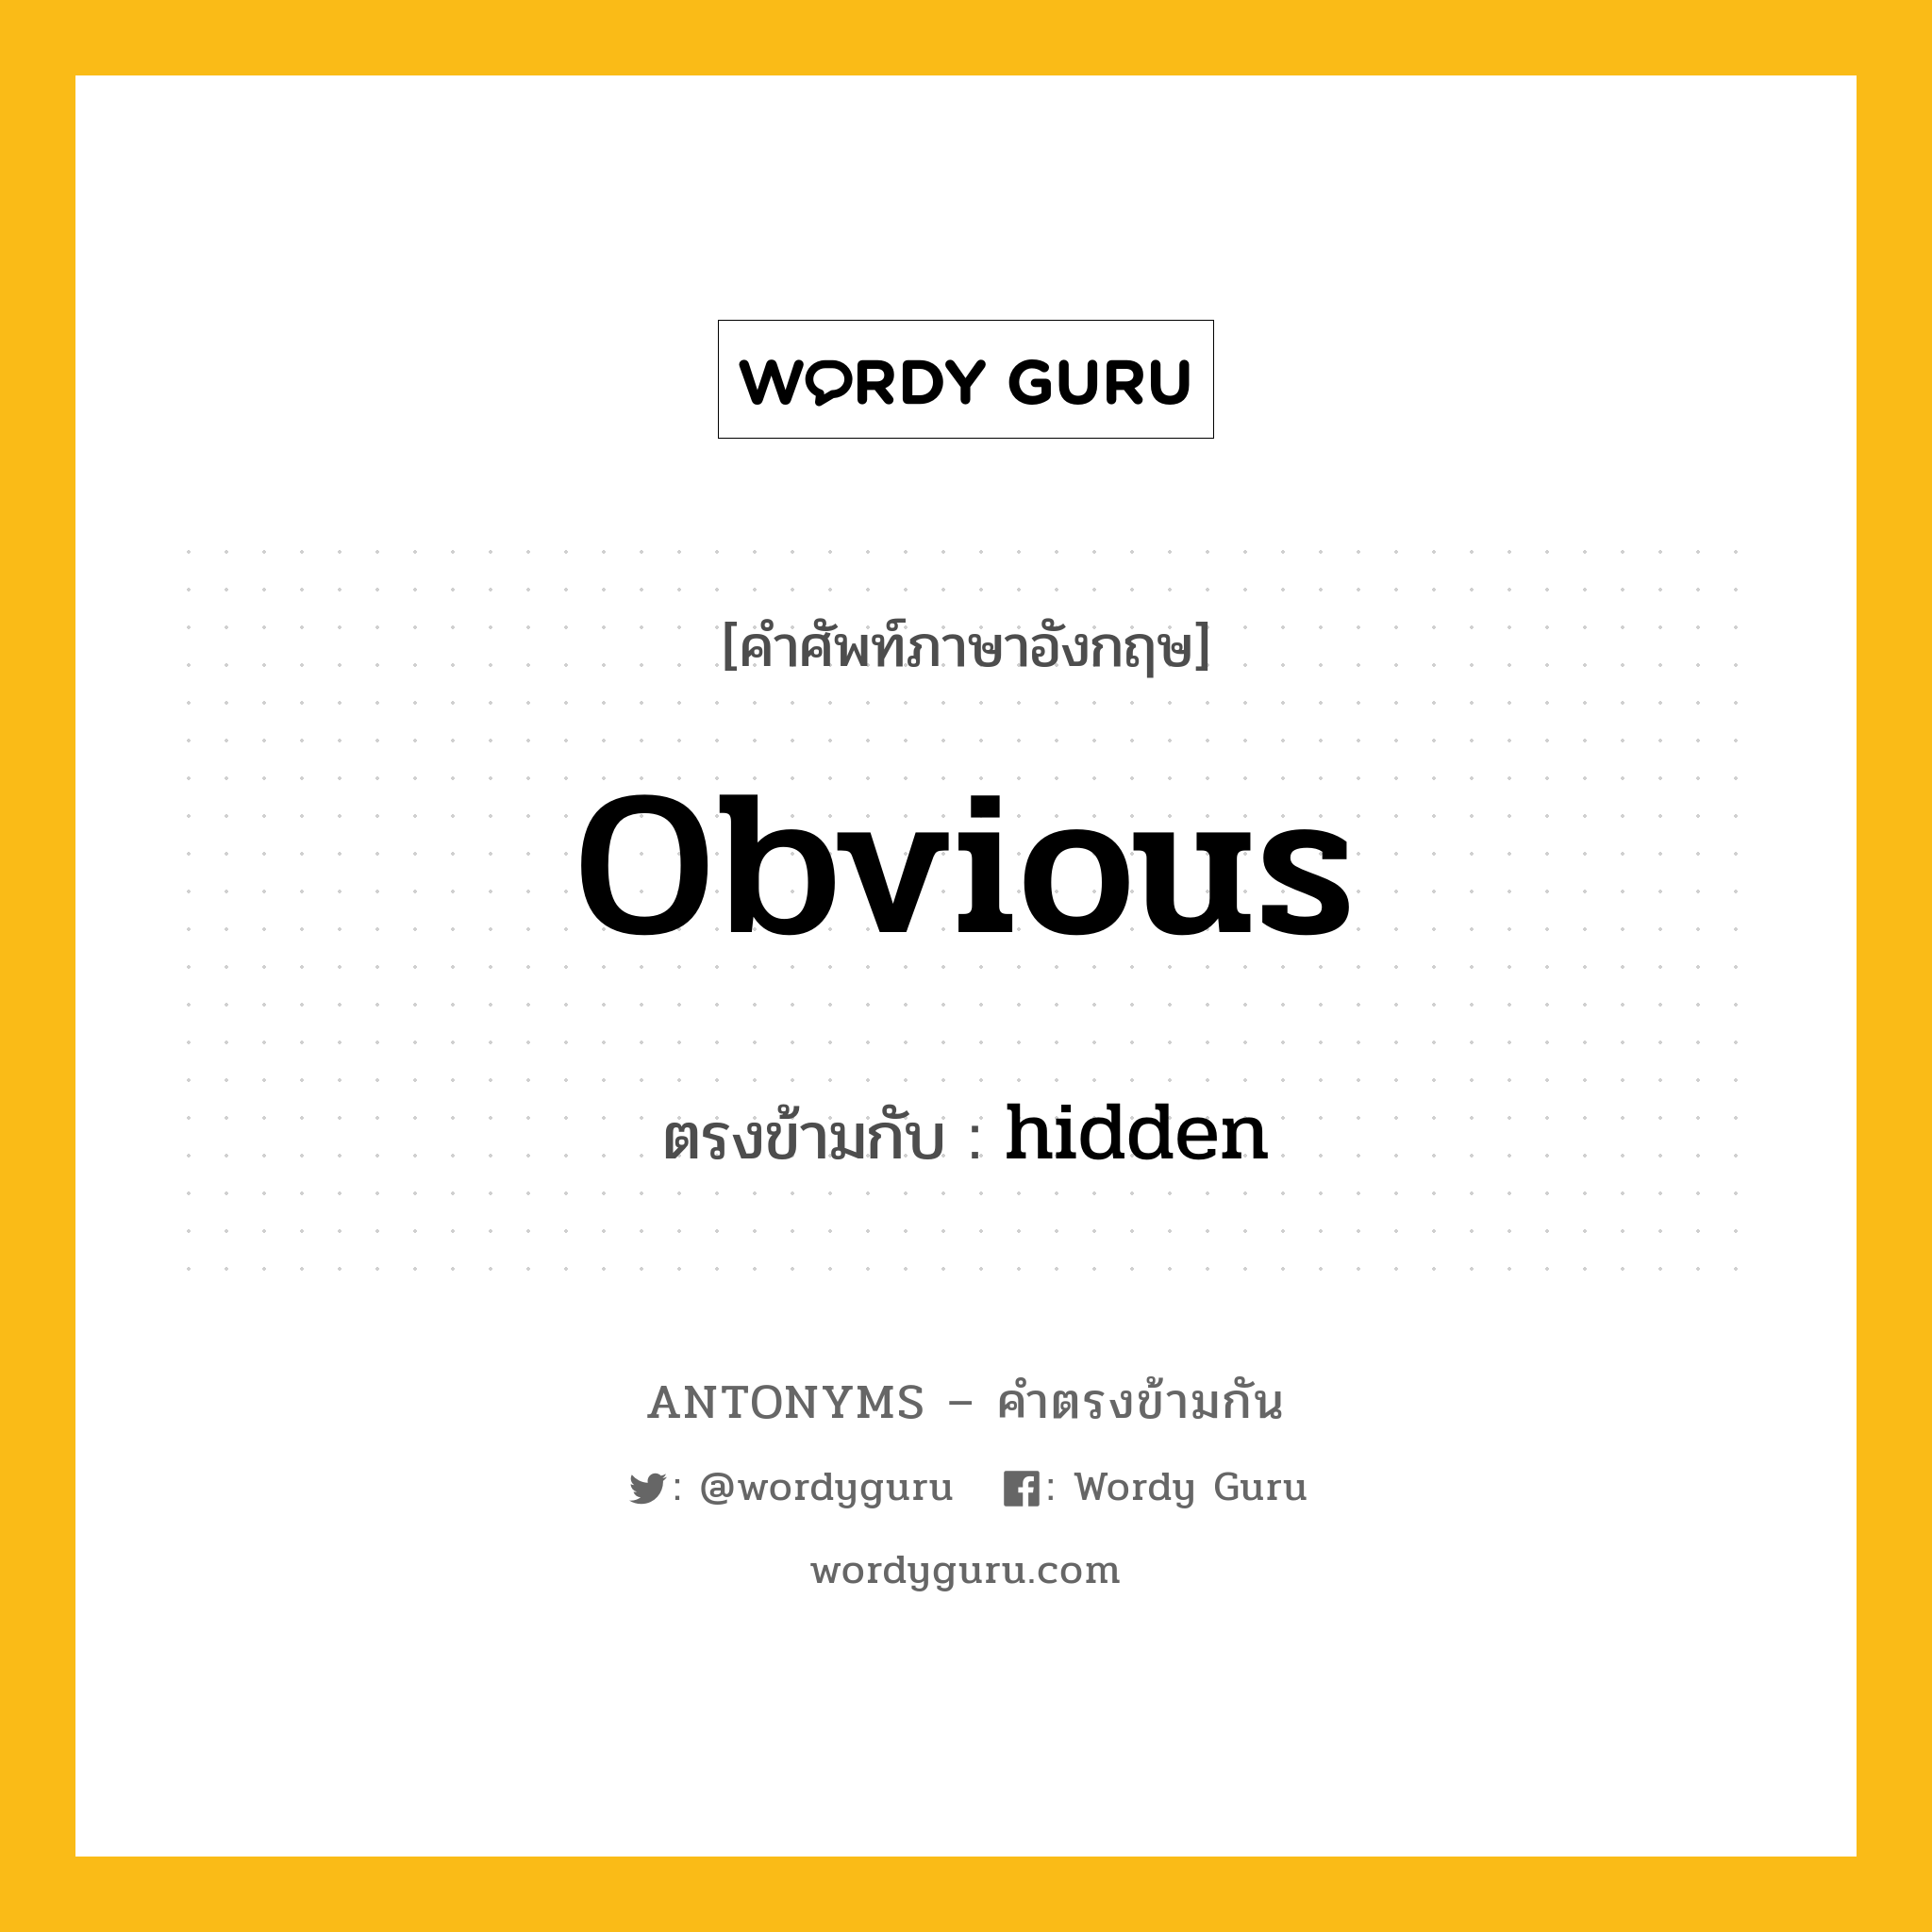 obvious เป็นคำตรงข้ามกับคำไหนบ้าง?, คำศัพท์ภาษาอังกฤษ obvious ตรงข้ามกับ hidden หมวด hidden